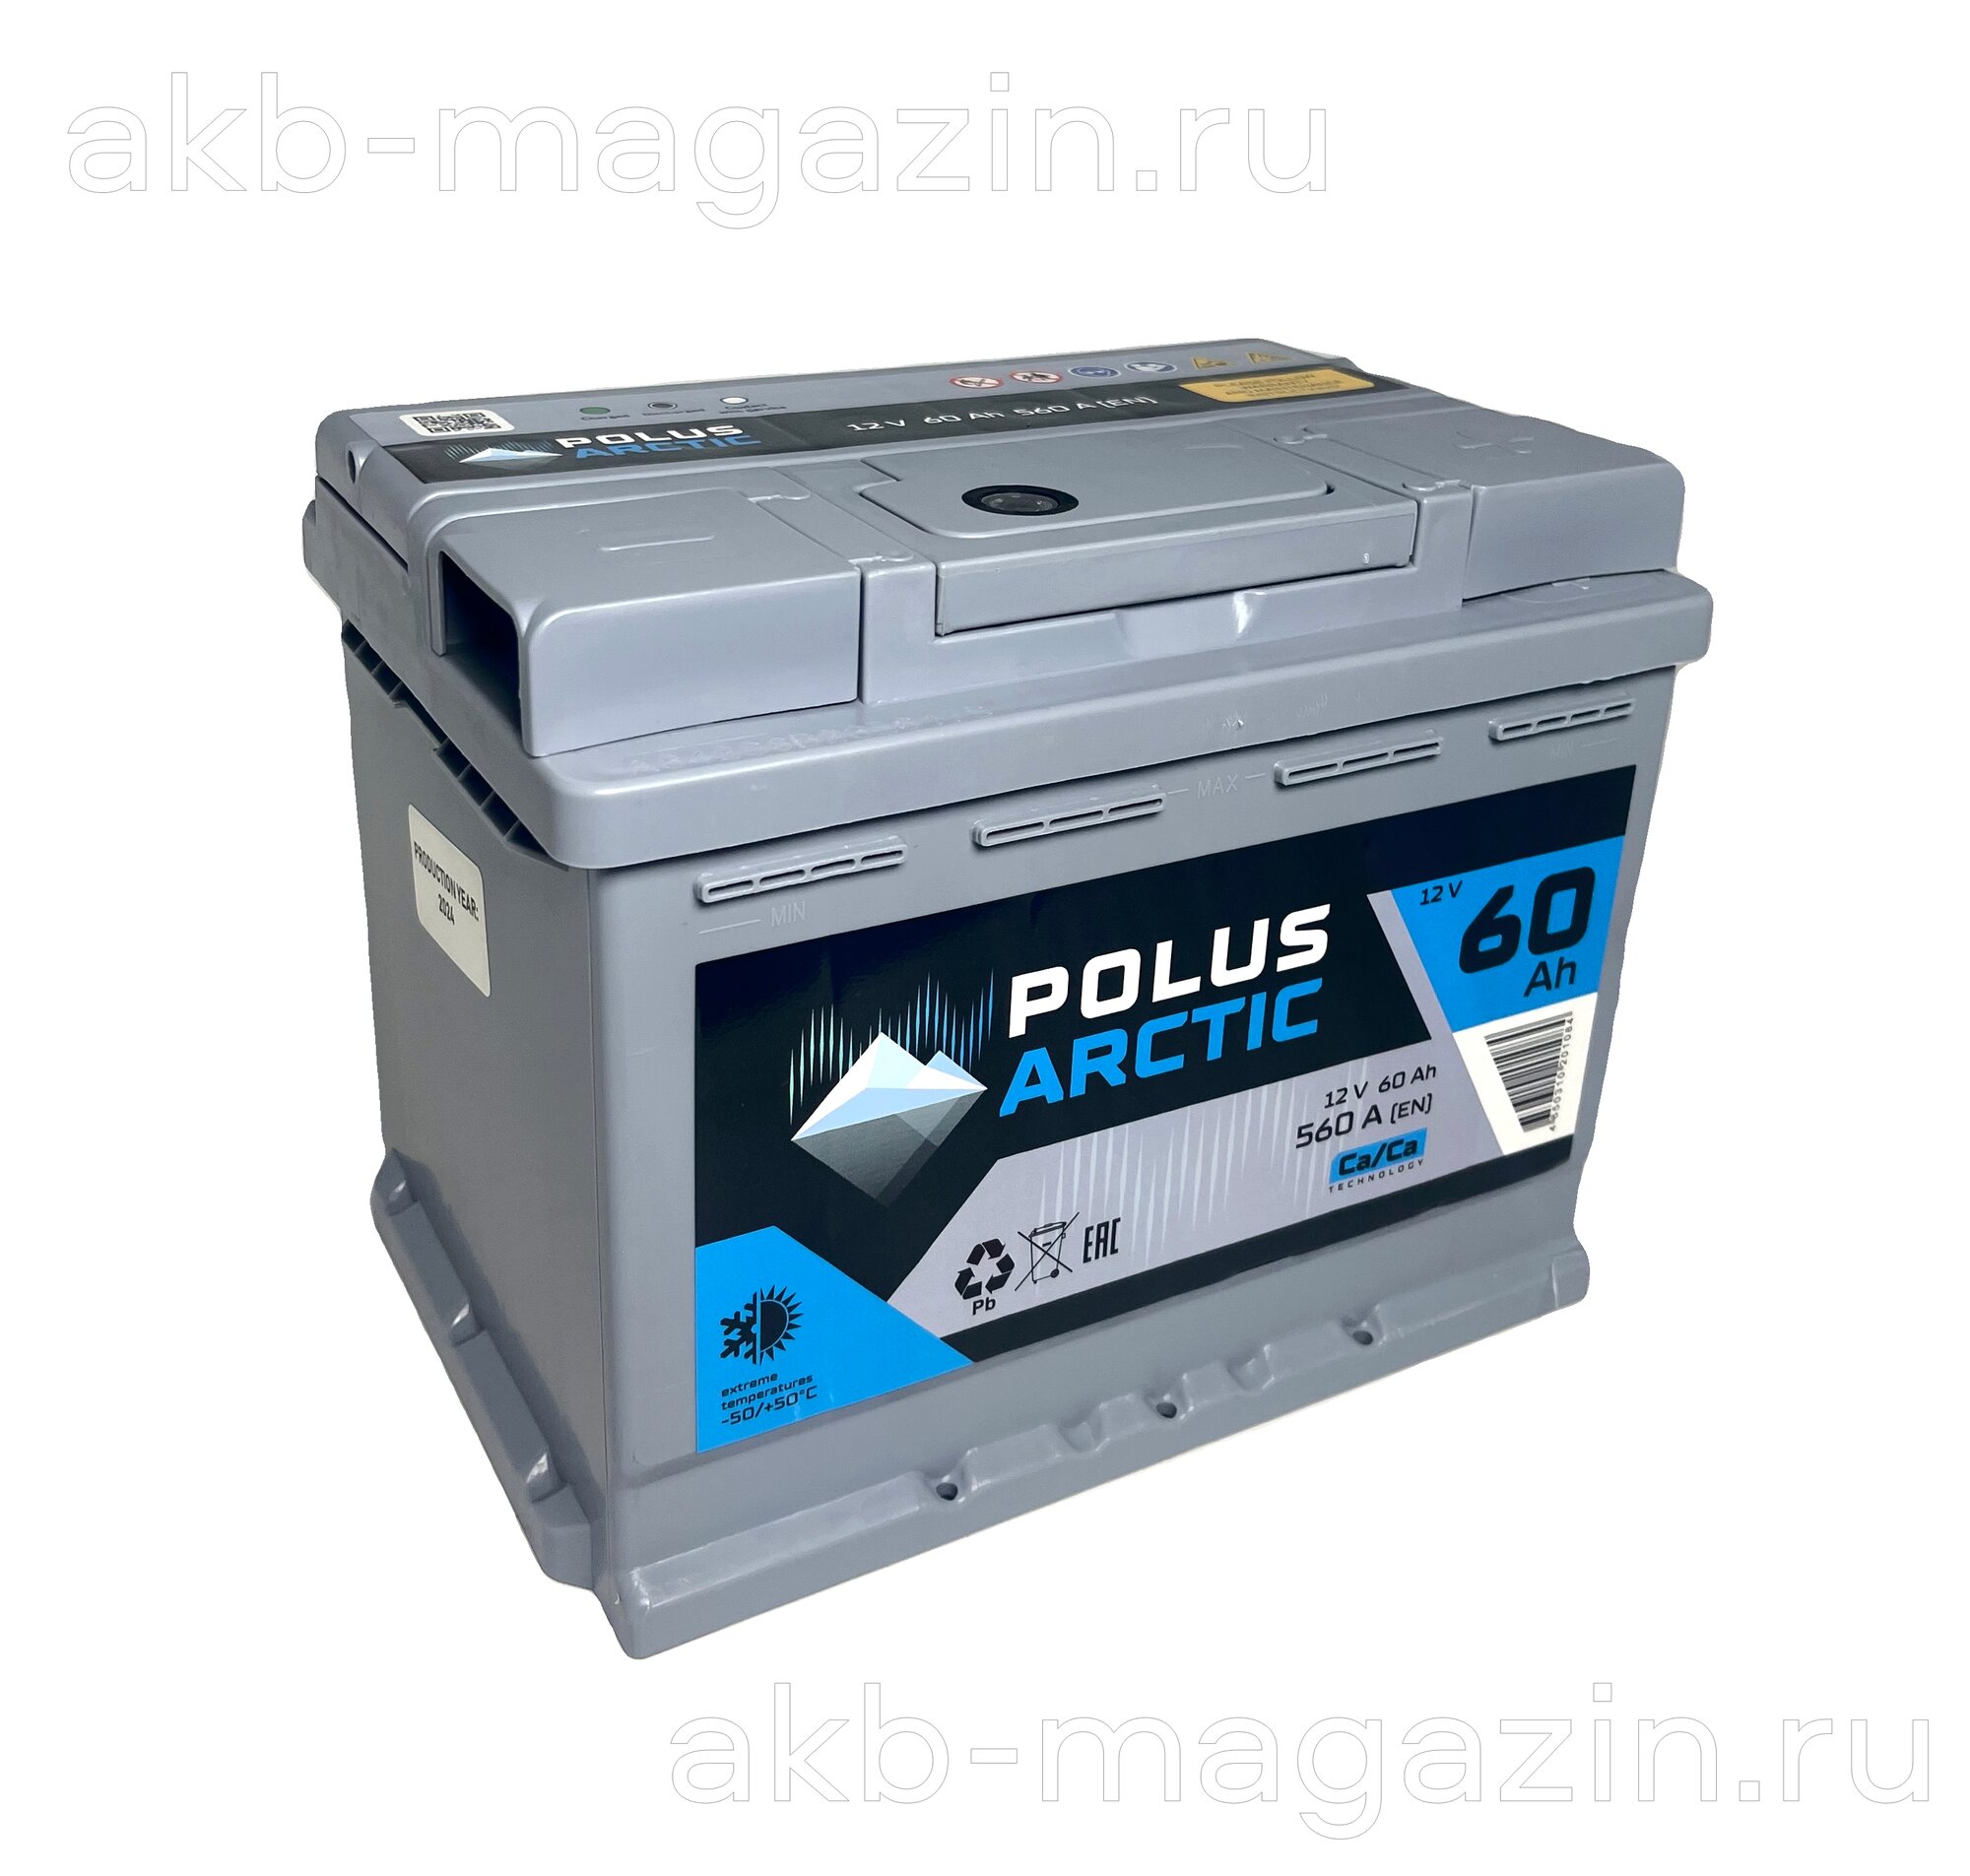 Автомобильный аккумулятор премиум класса POLUS ARCTIC 6СТ-60.0 обрат. поляр.